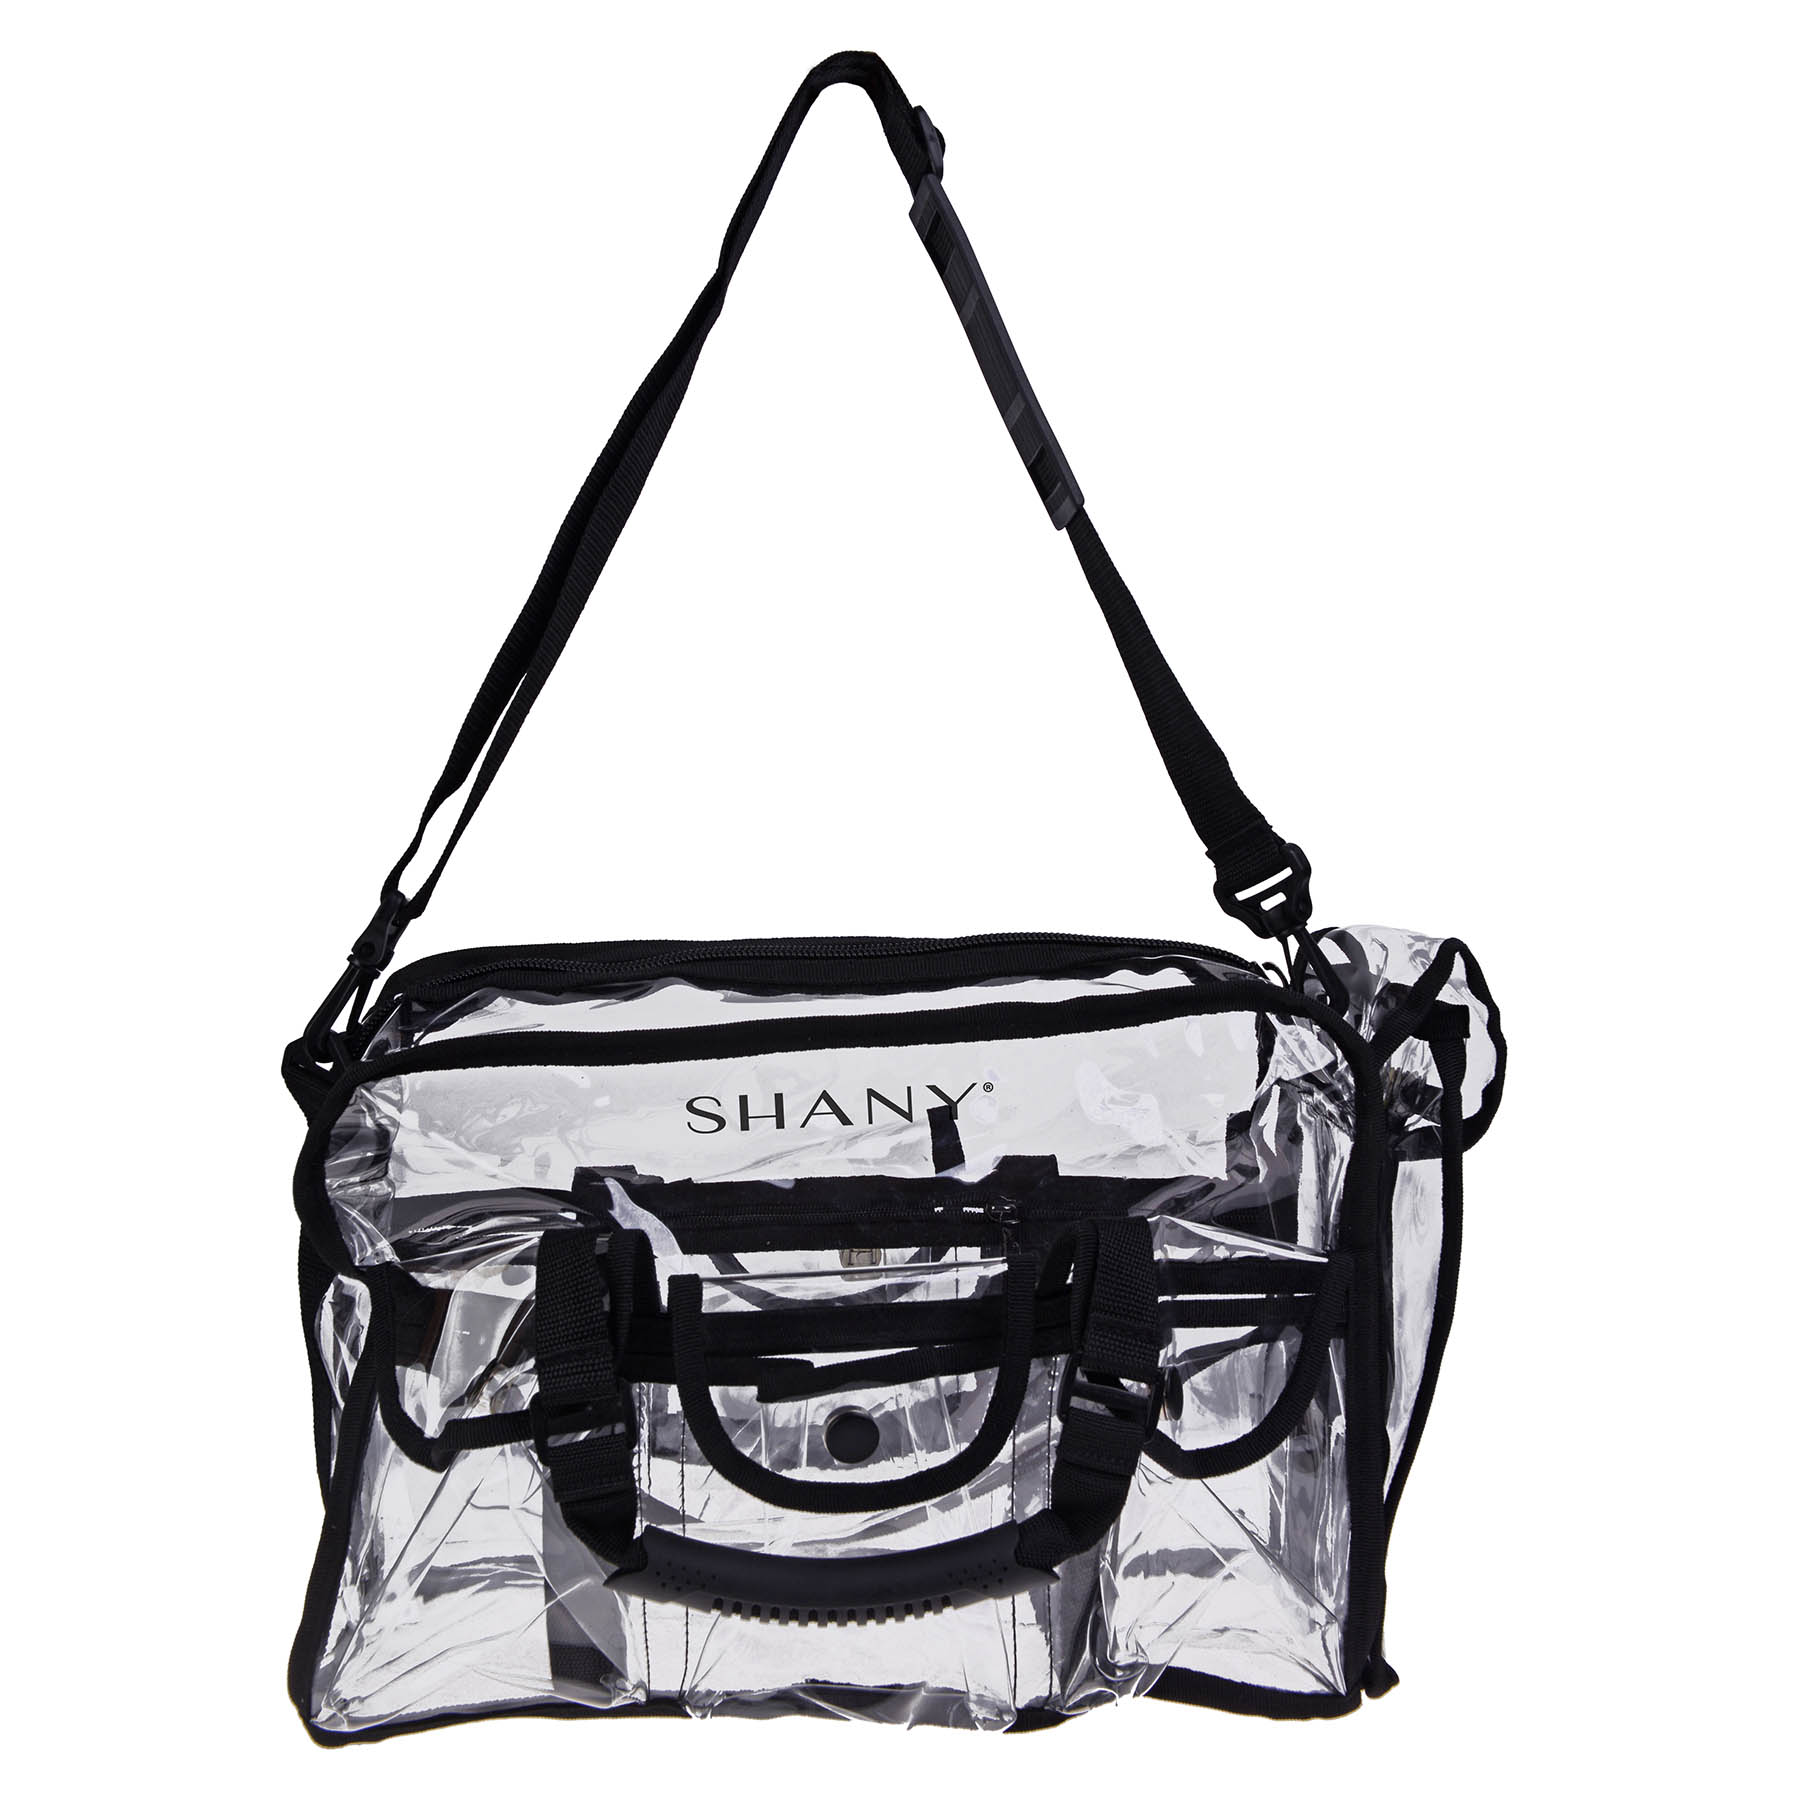 SHANY Clear Makeup Bag, Pro Mua rectangular Bag with Shoulder Strap, Large 